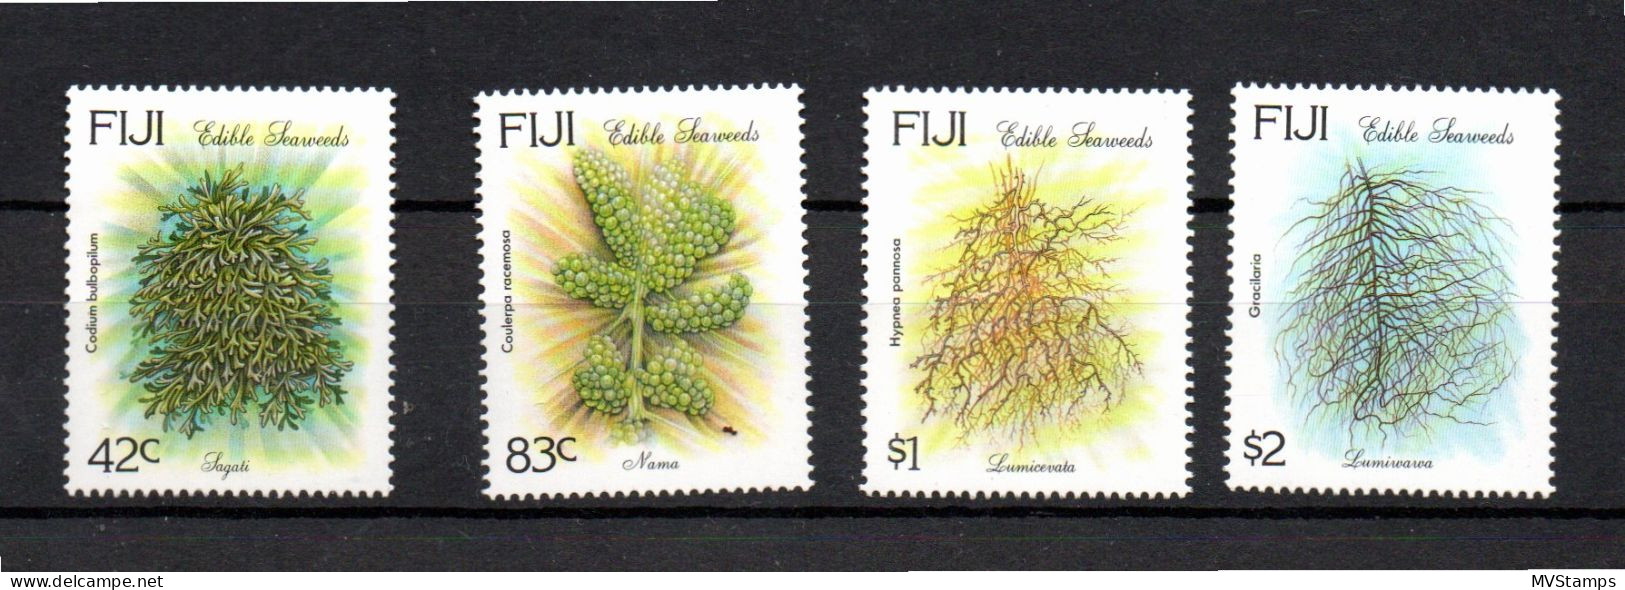 Fiji 1994 Set Flowers/Trees Stamps (Michel 708/11) MNH - Fidji (1970-...)